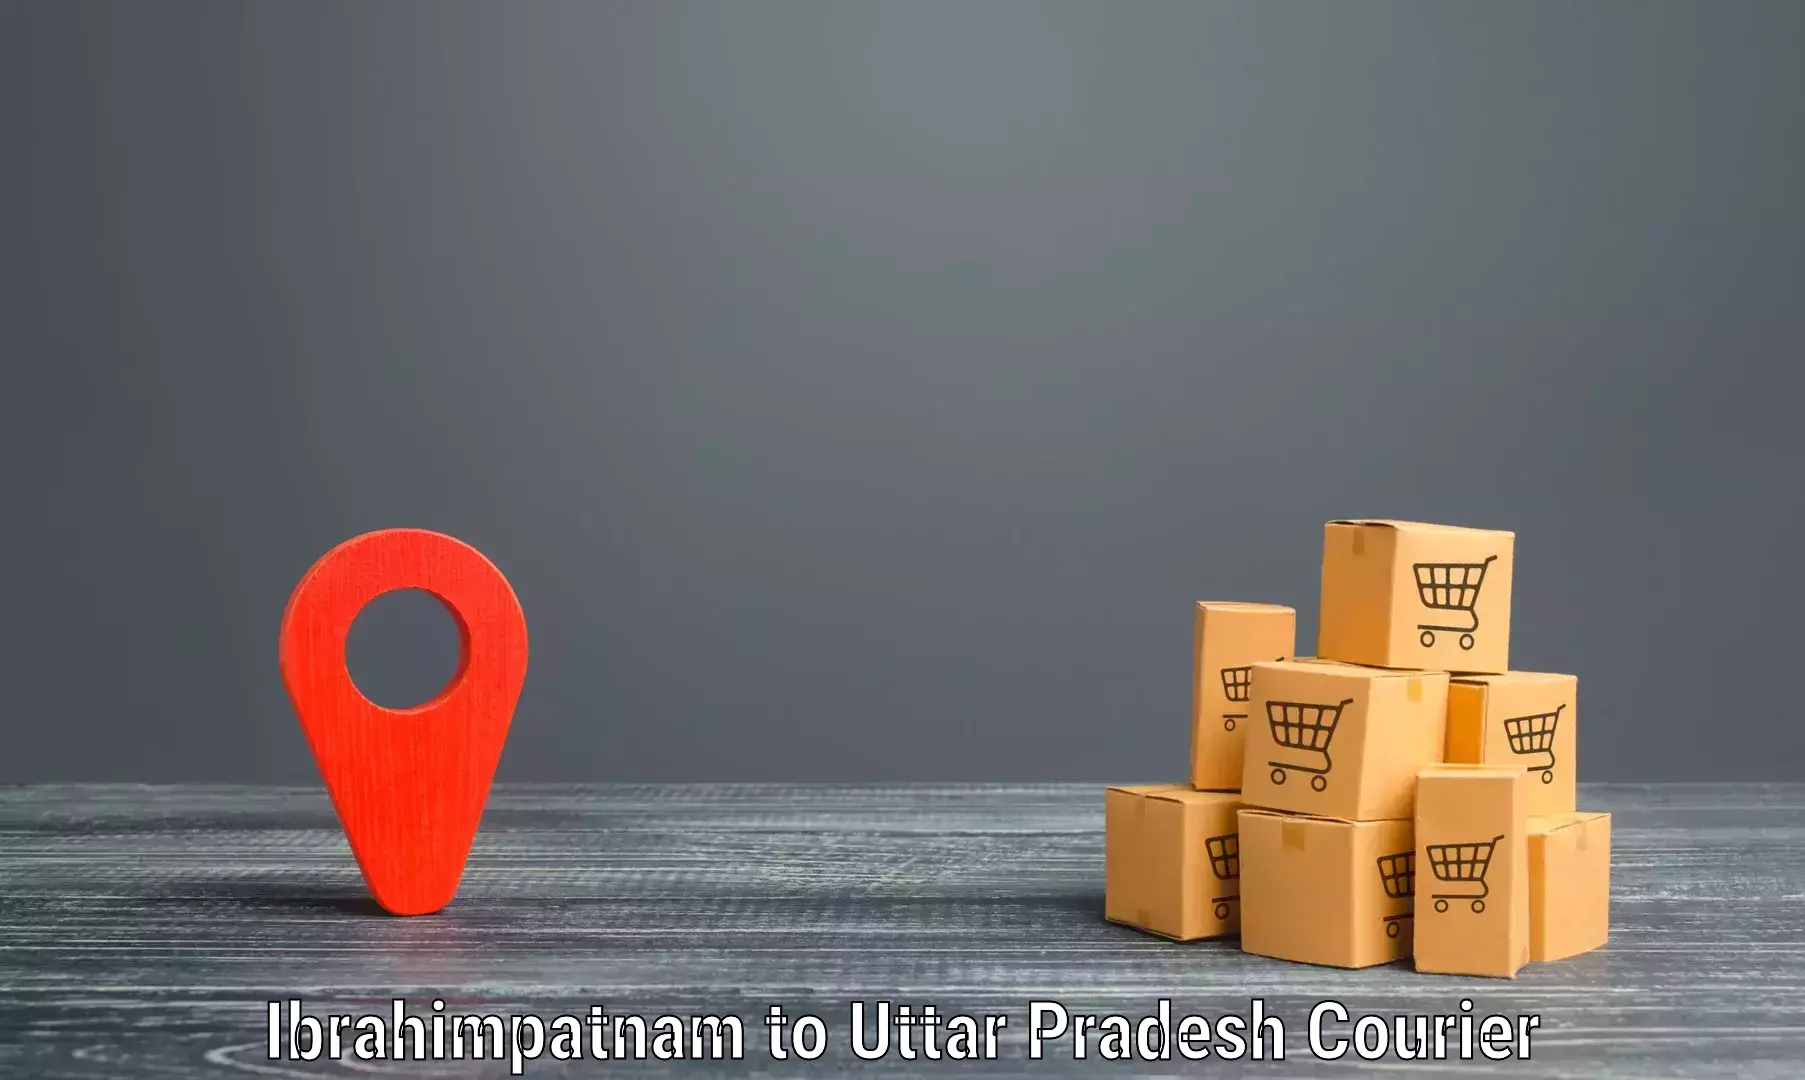 End-to-end delivery Ibrahimpatnam to Katghar Lalganj